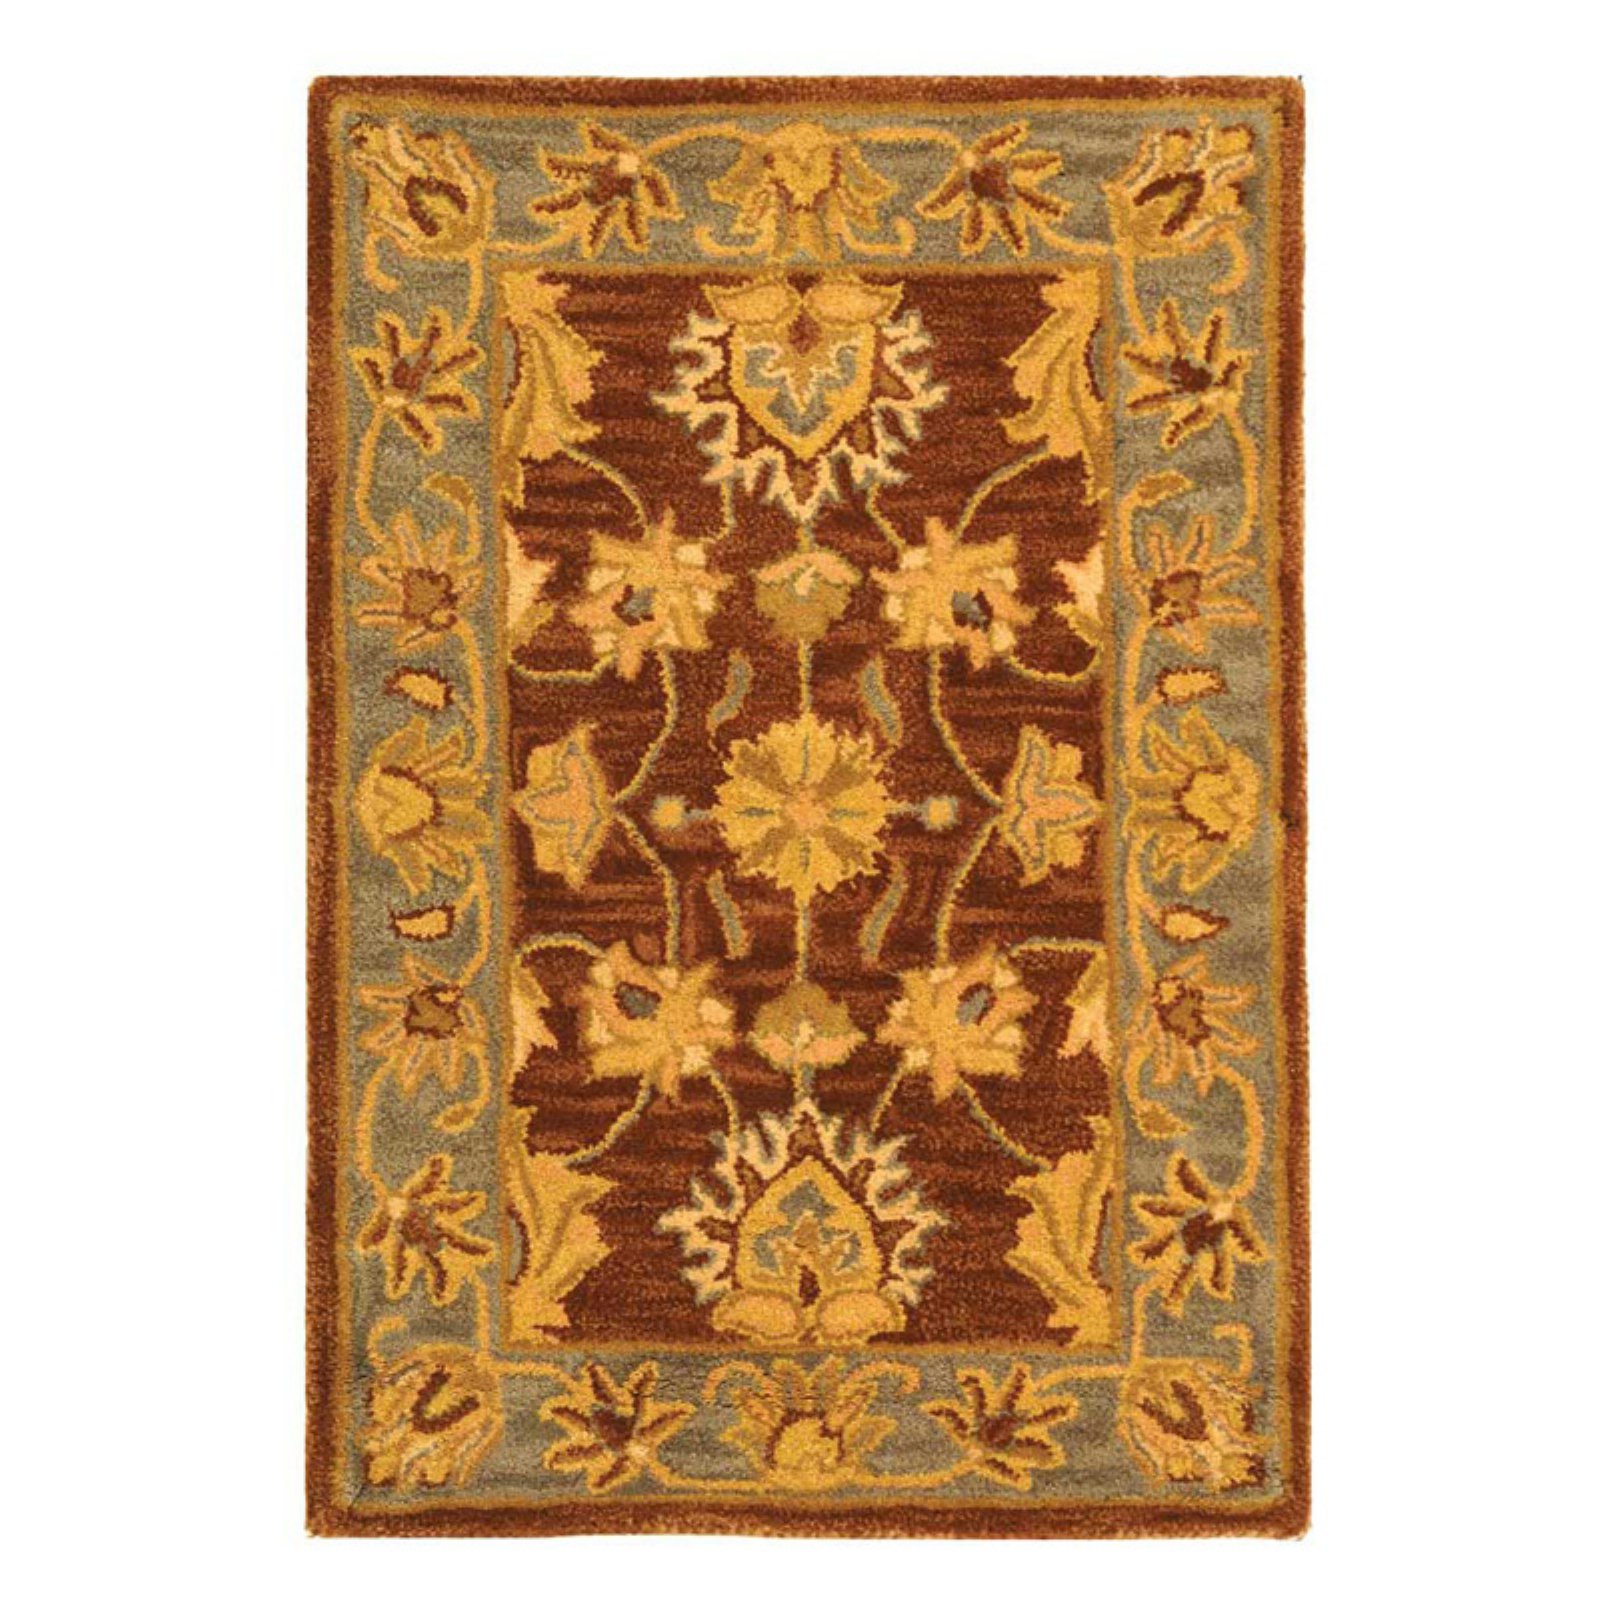 SAFAVIEH Heritage Regis Traditional Wool Area Rug, Brown/Blue, 8'3" x 11' - image 1 of 9